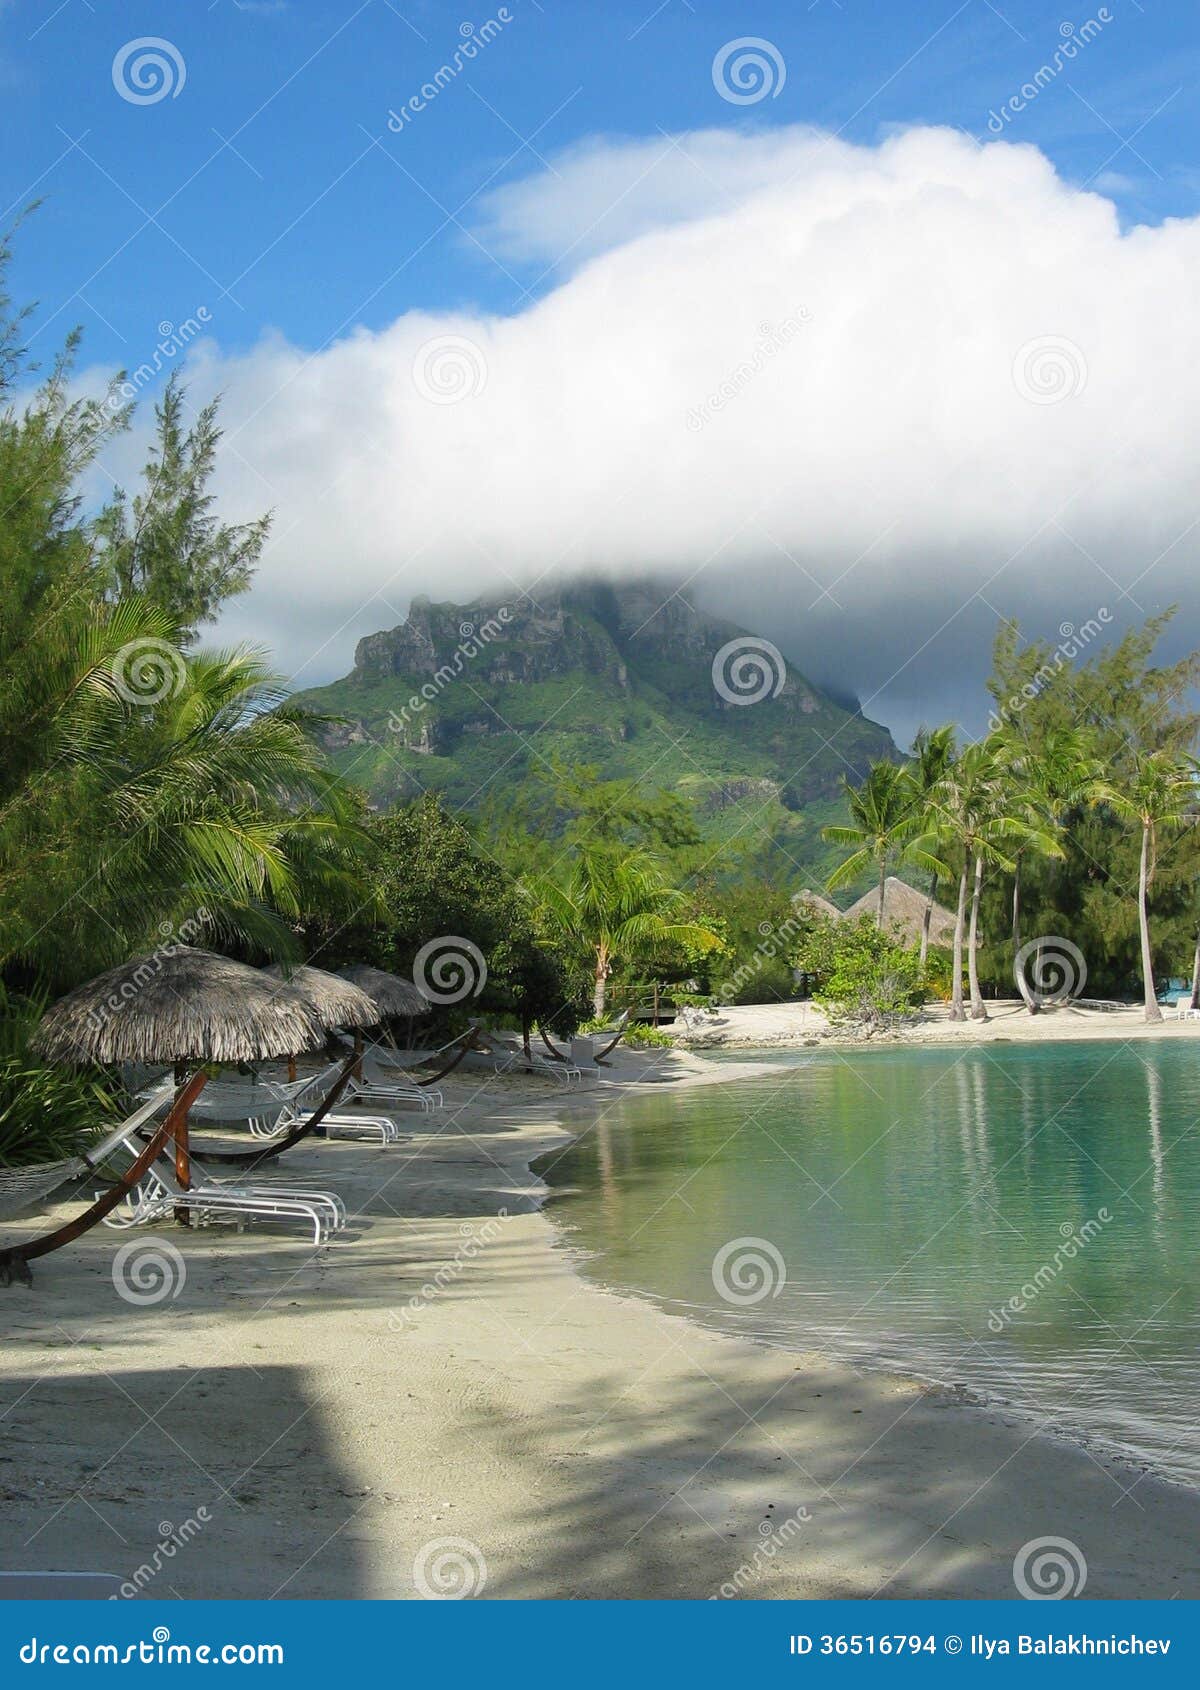 mountain bora-bora french polinesia with lagoon